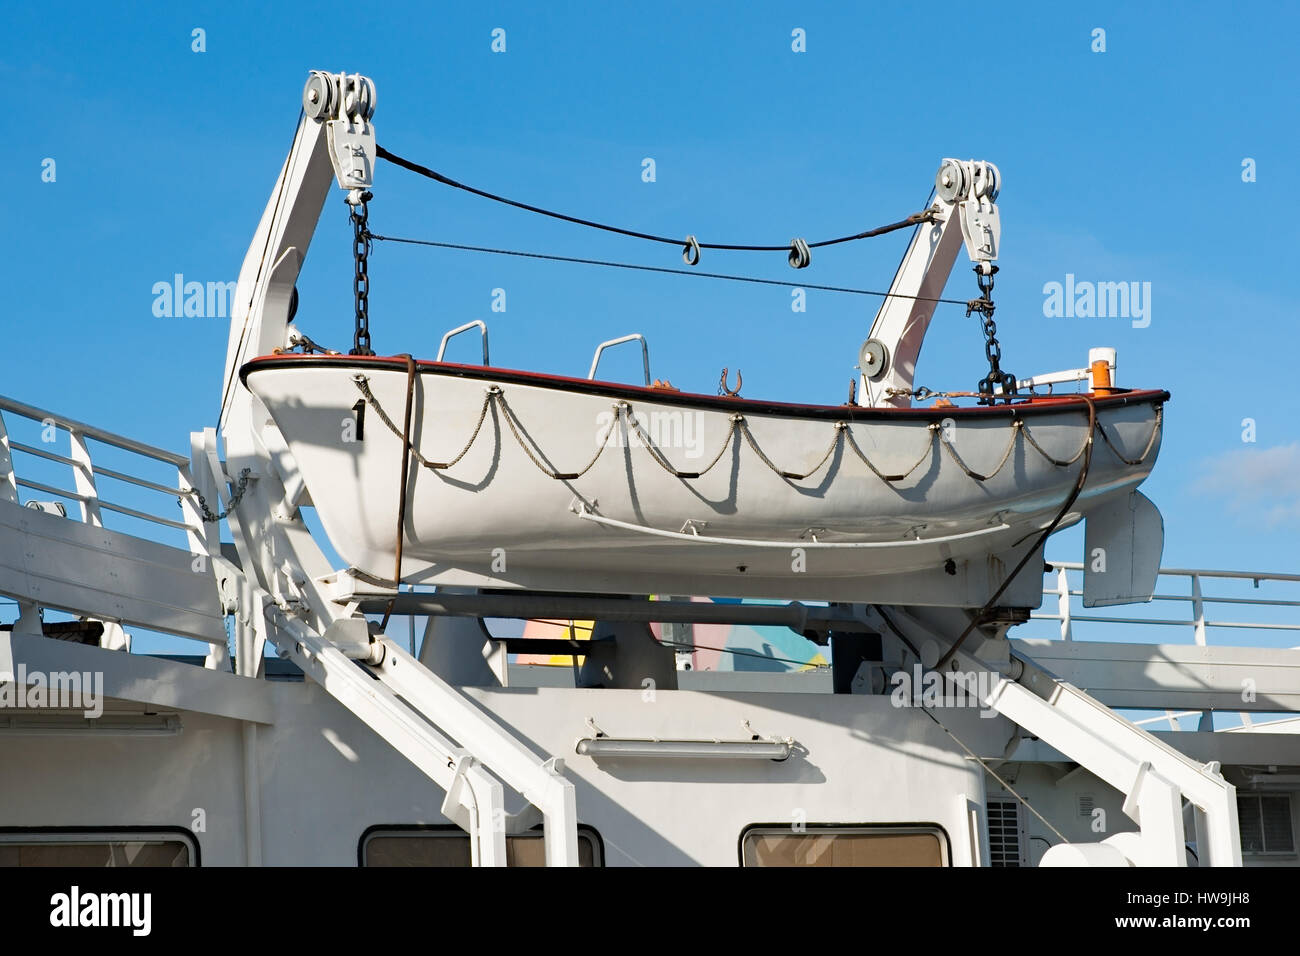 Weiße Rettungsboot hängt an einer Boot-Winde eines Schiffes oder Schiff. Blauen Himmel im Hintergrund. Stockfoto